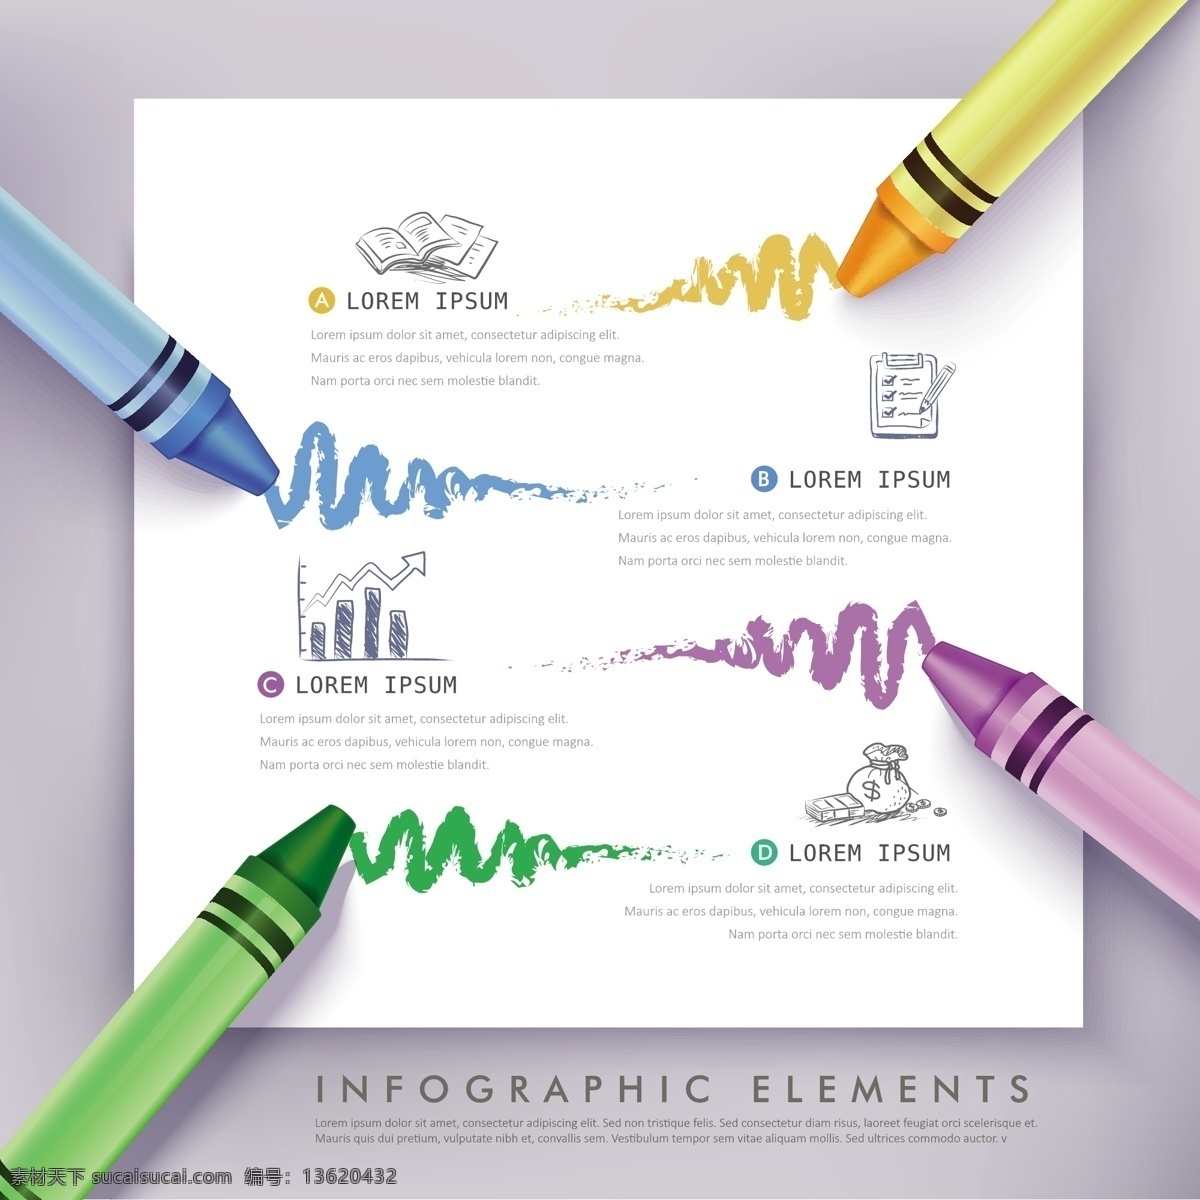 四色蜡笔涂鸦 商务信息图 矢量素材 蜡笔 商务 涂鸦 信息图 四色 白色